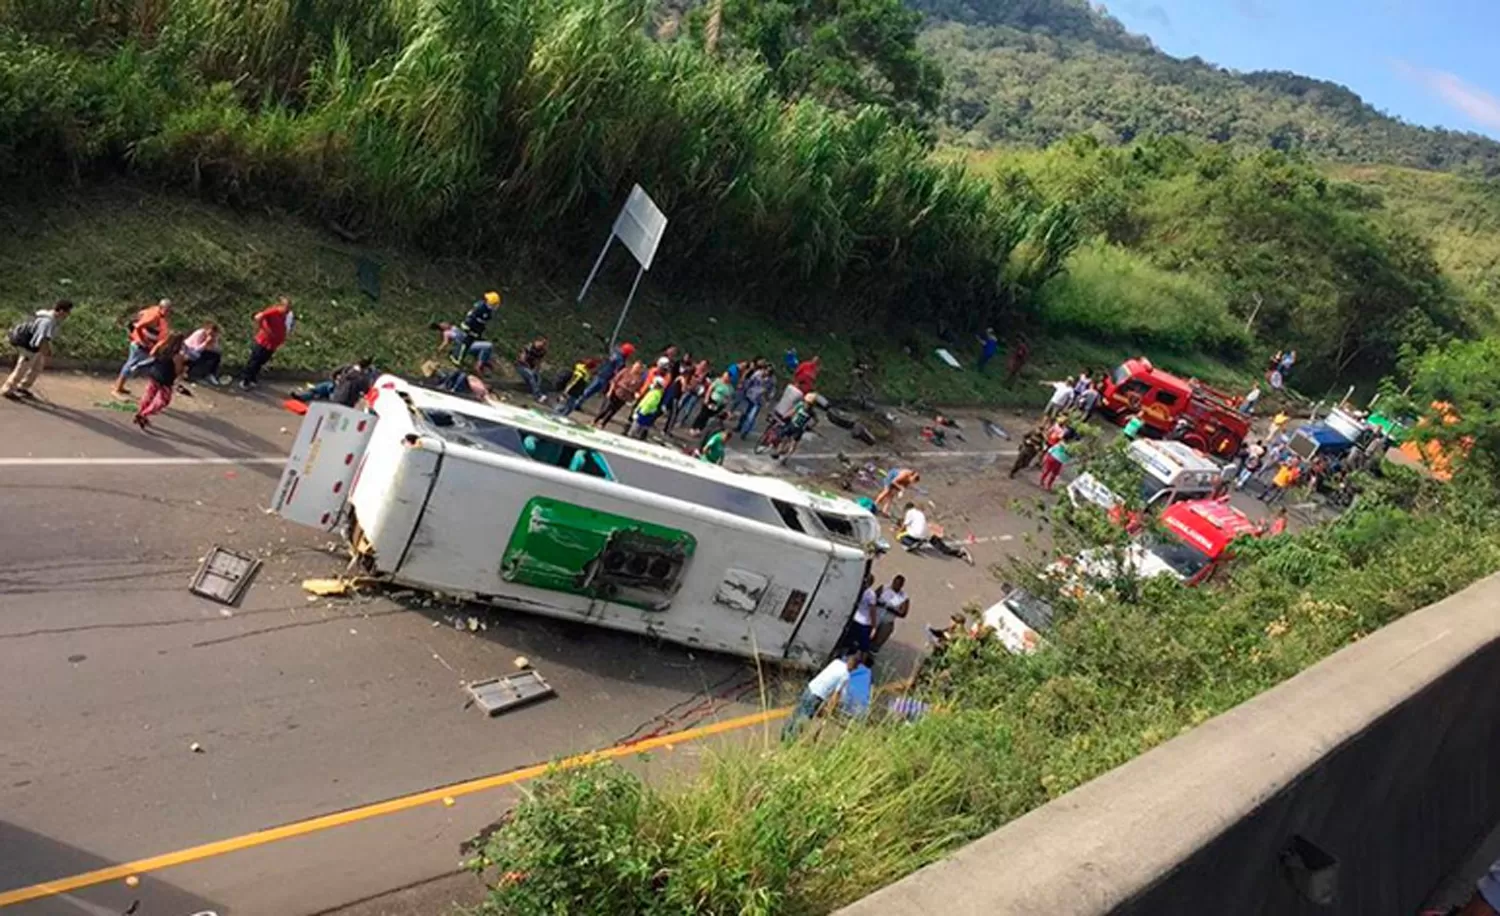 Tragedia: al menos 13 muertos y 20 heridos dejó un accidente en Colombia